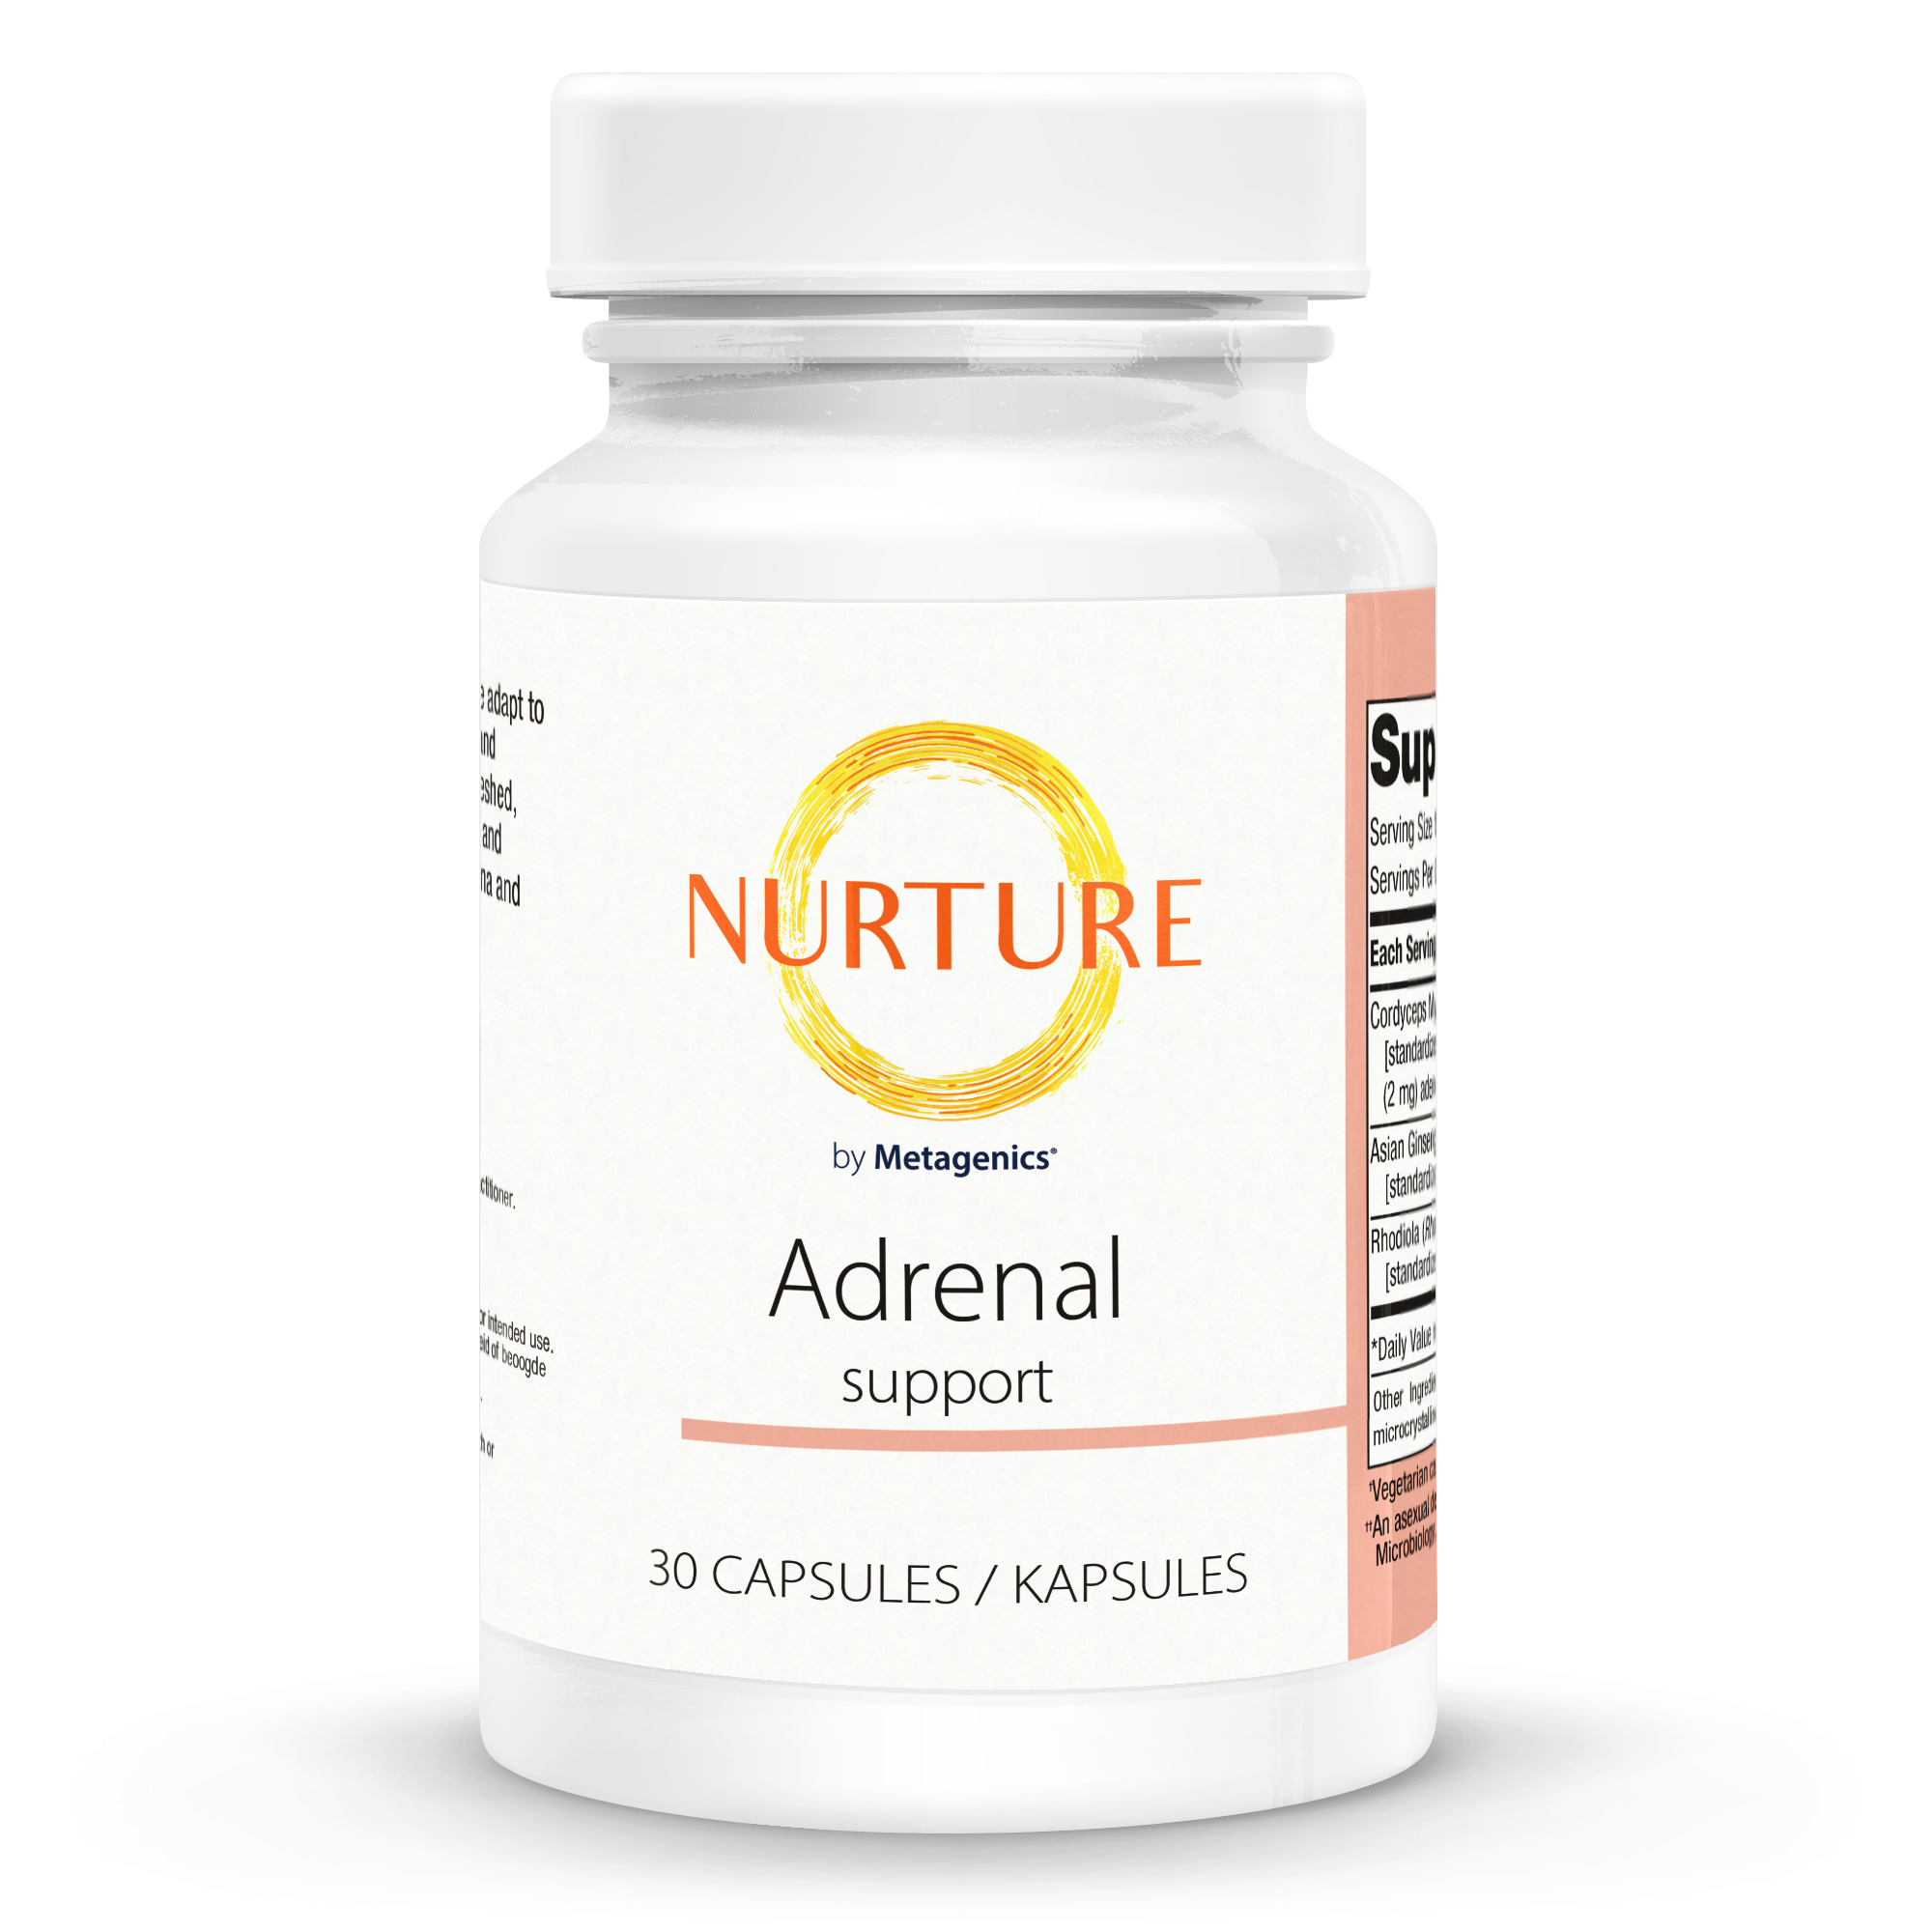 Nurture Adrenal Support